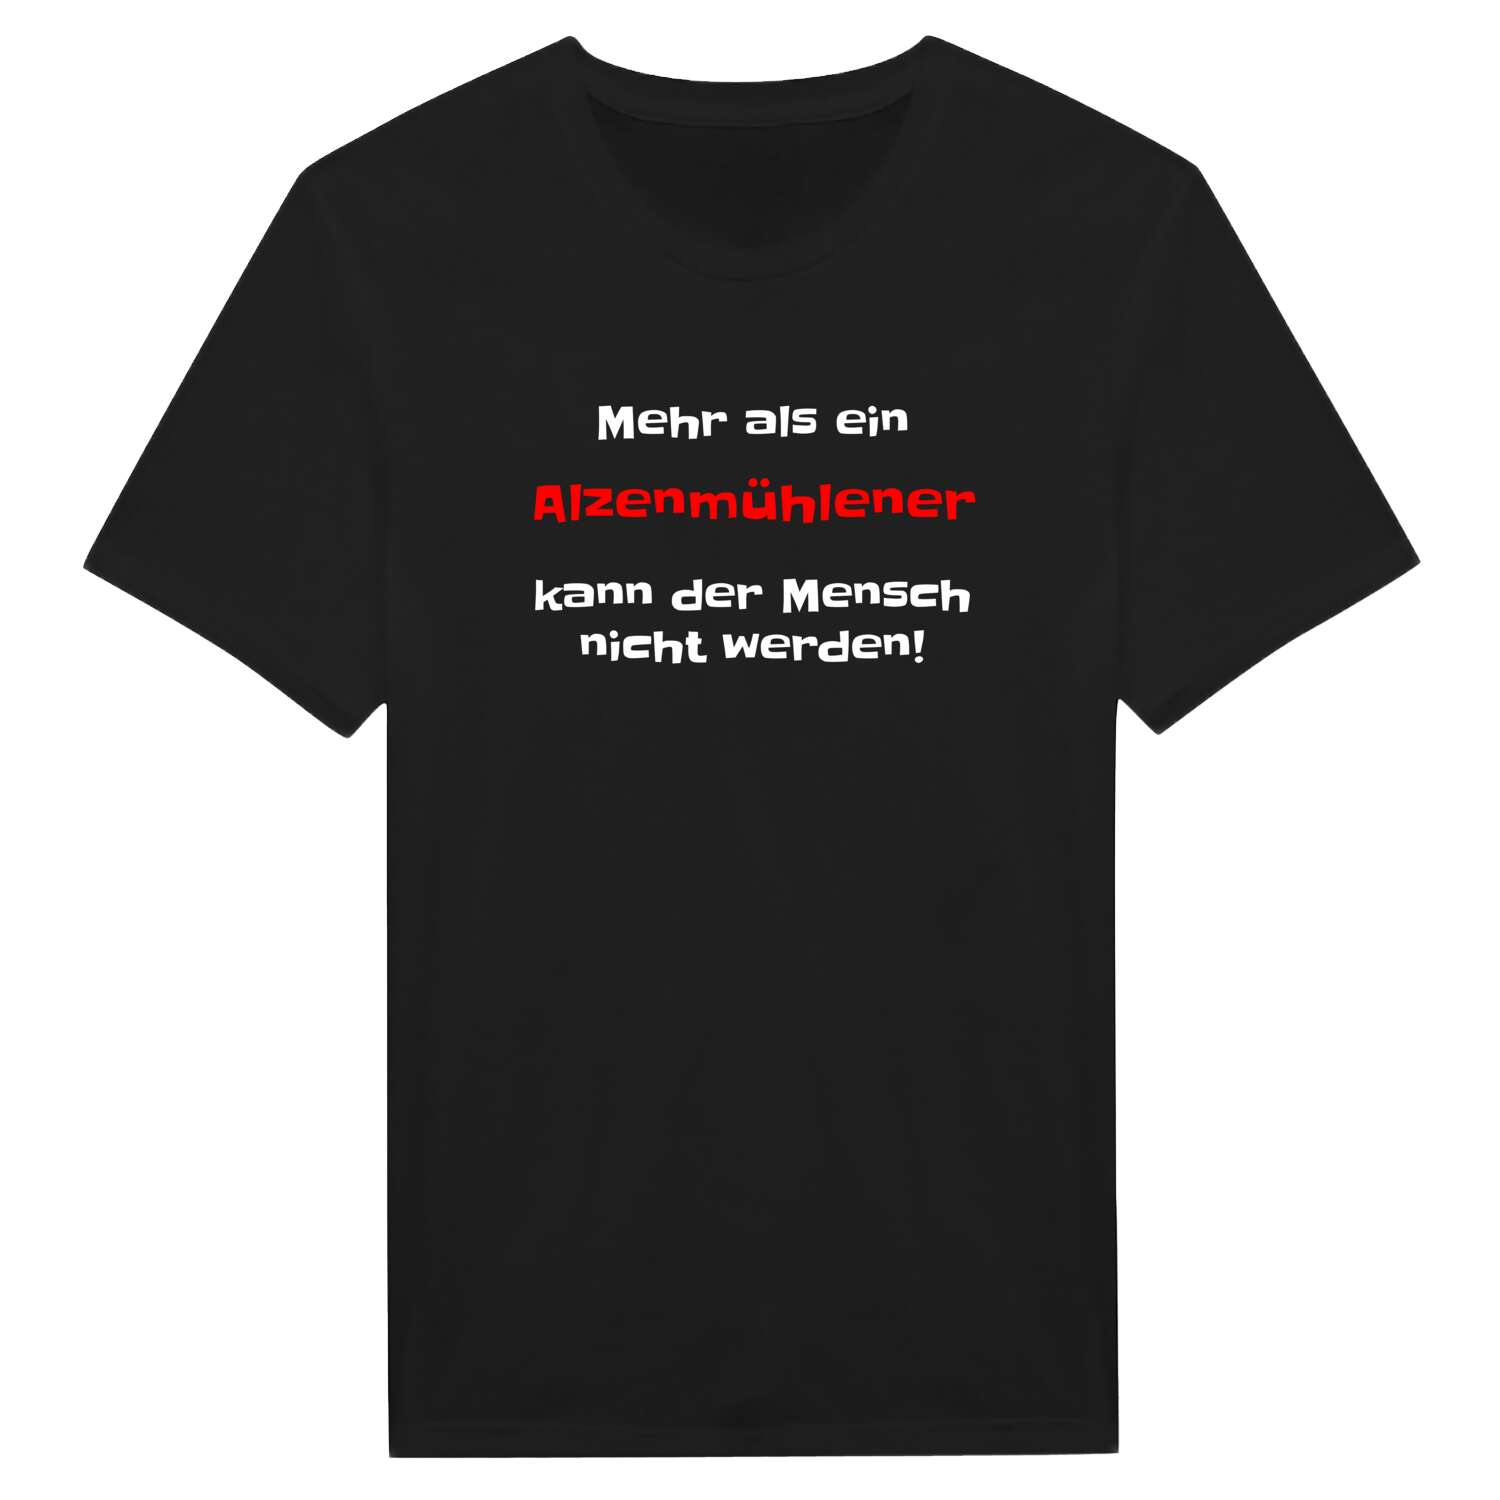 Alzenmühle T-Shirt »Mehr als ein«